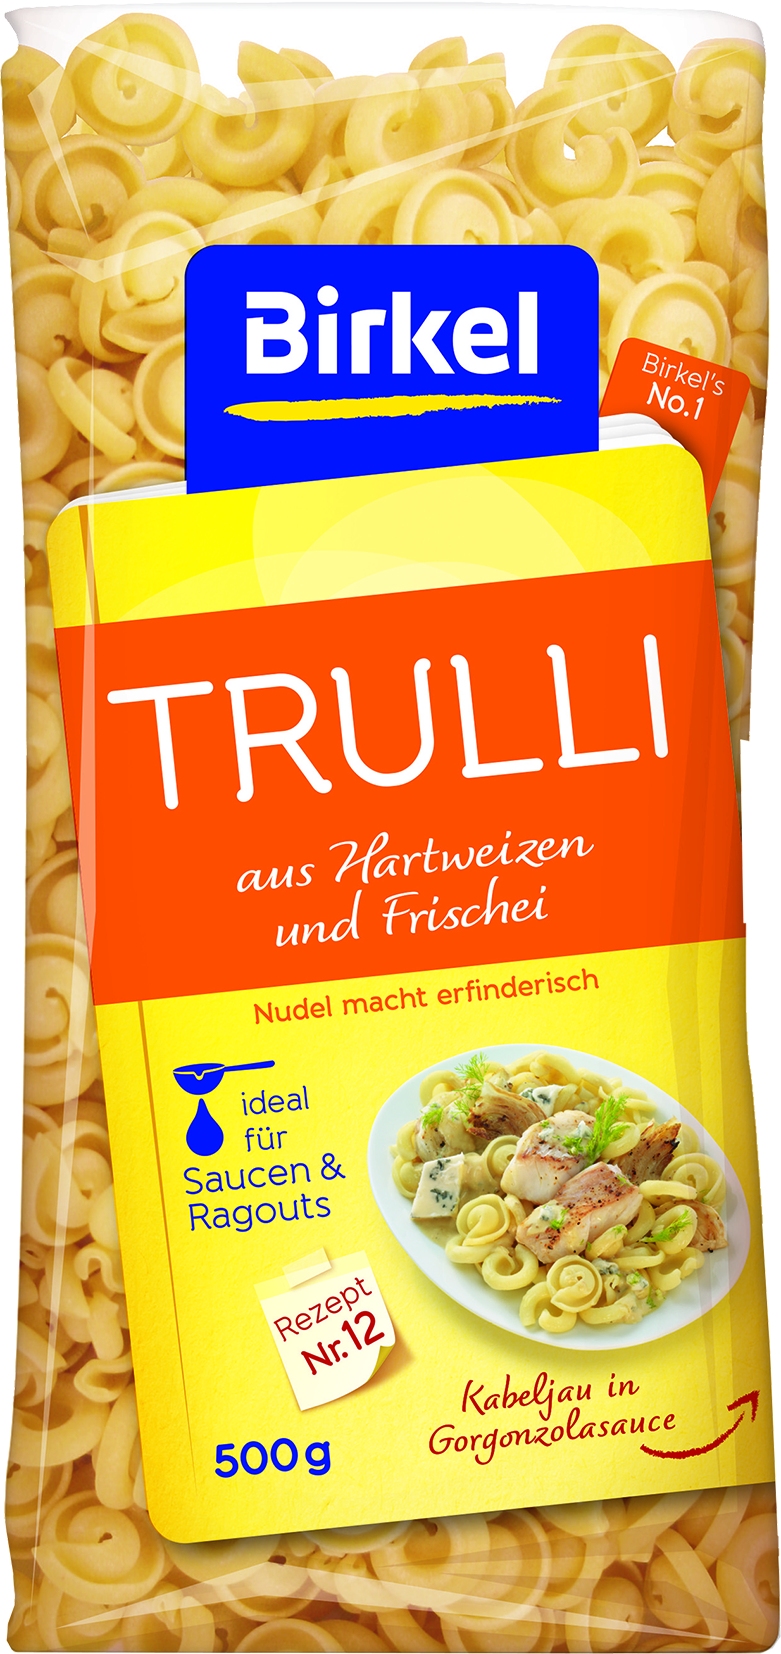 No. 1 Trulli